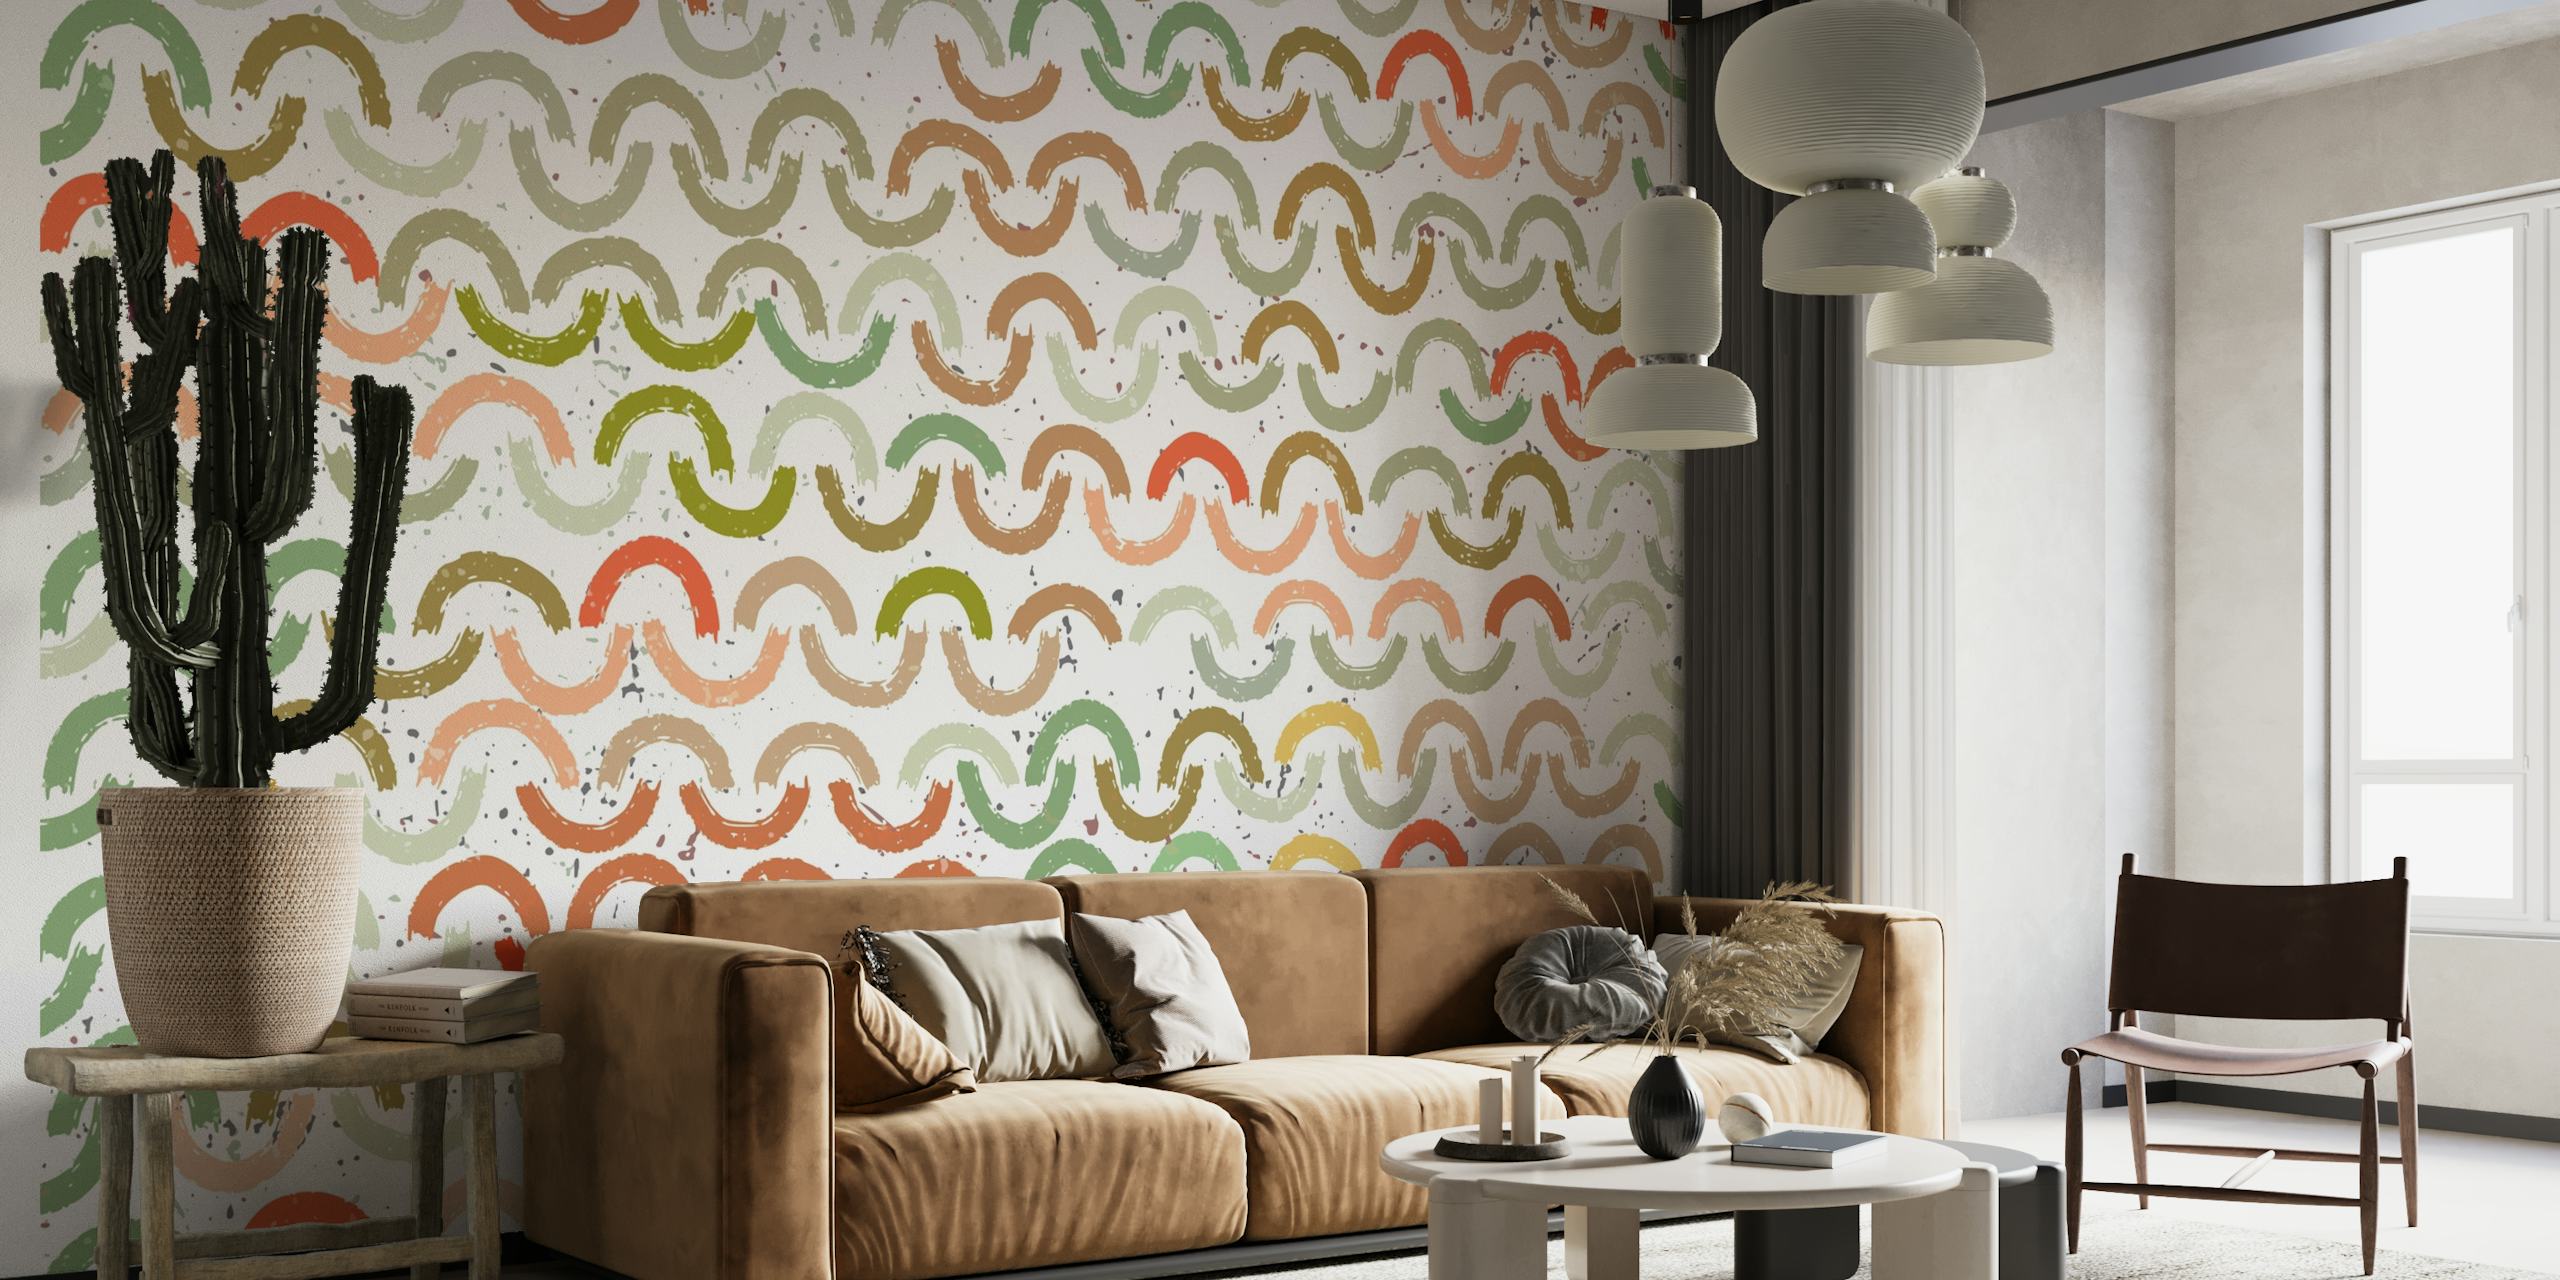 Fargerikt veggmaleri med mønster av malte buer i ulike nyanser